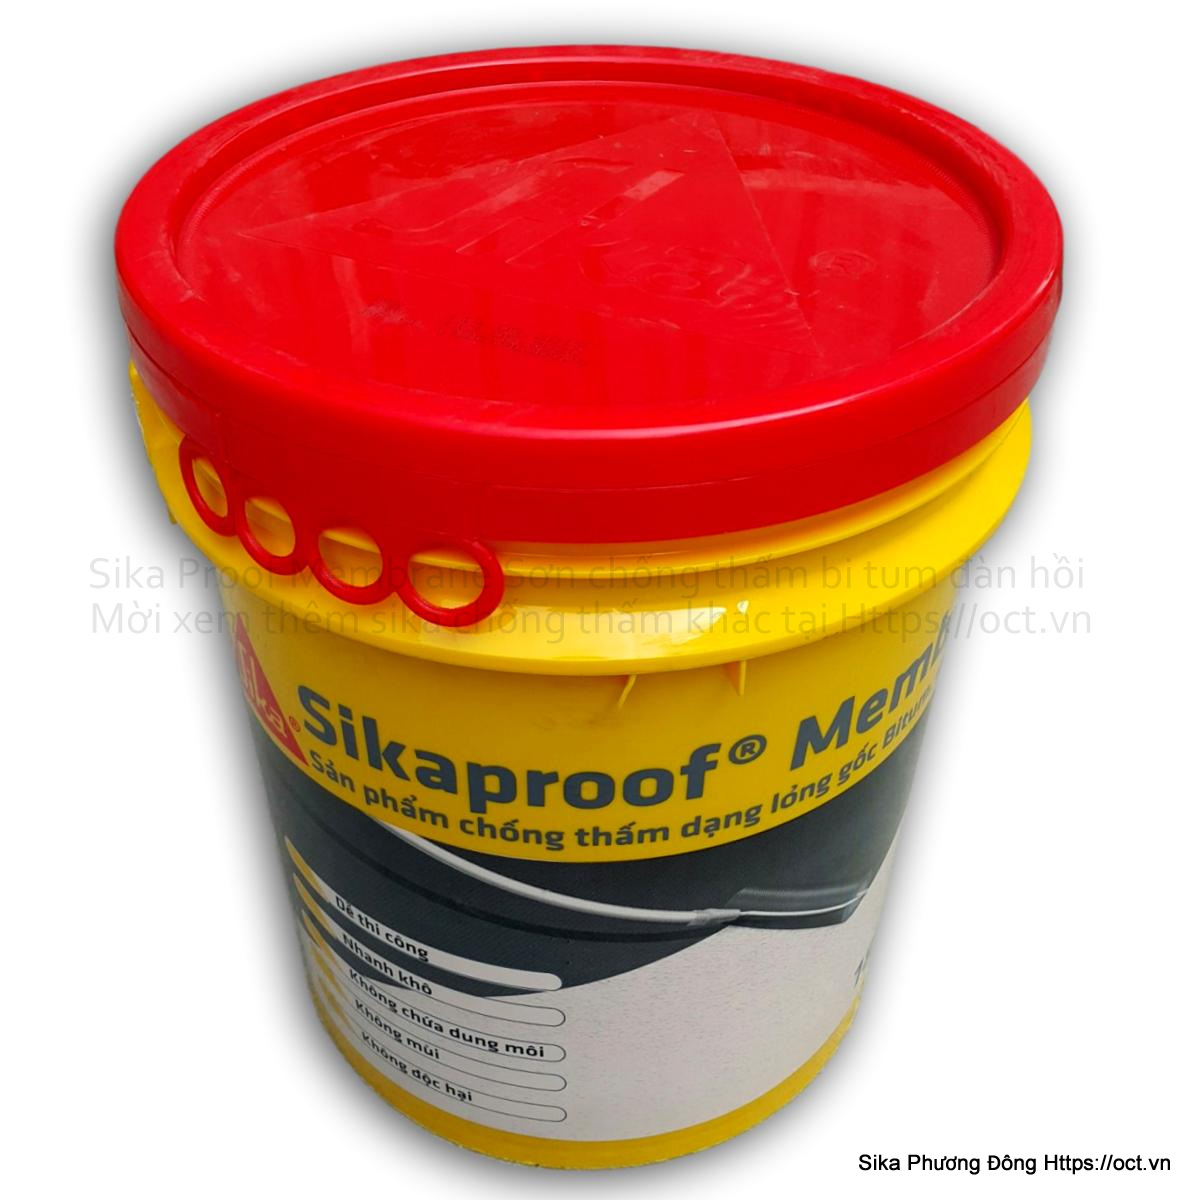 Sikaproof Membrane là giải pháp tối ưu để ngăn ngừa sự xâm nhập của nước vào công trình của bạn. Đừng bỏ lỡ cơ hội xem hình ảnh và học hỏi thêm về sản phẩm này.